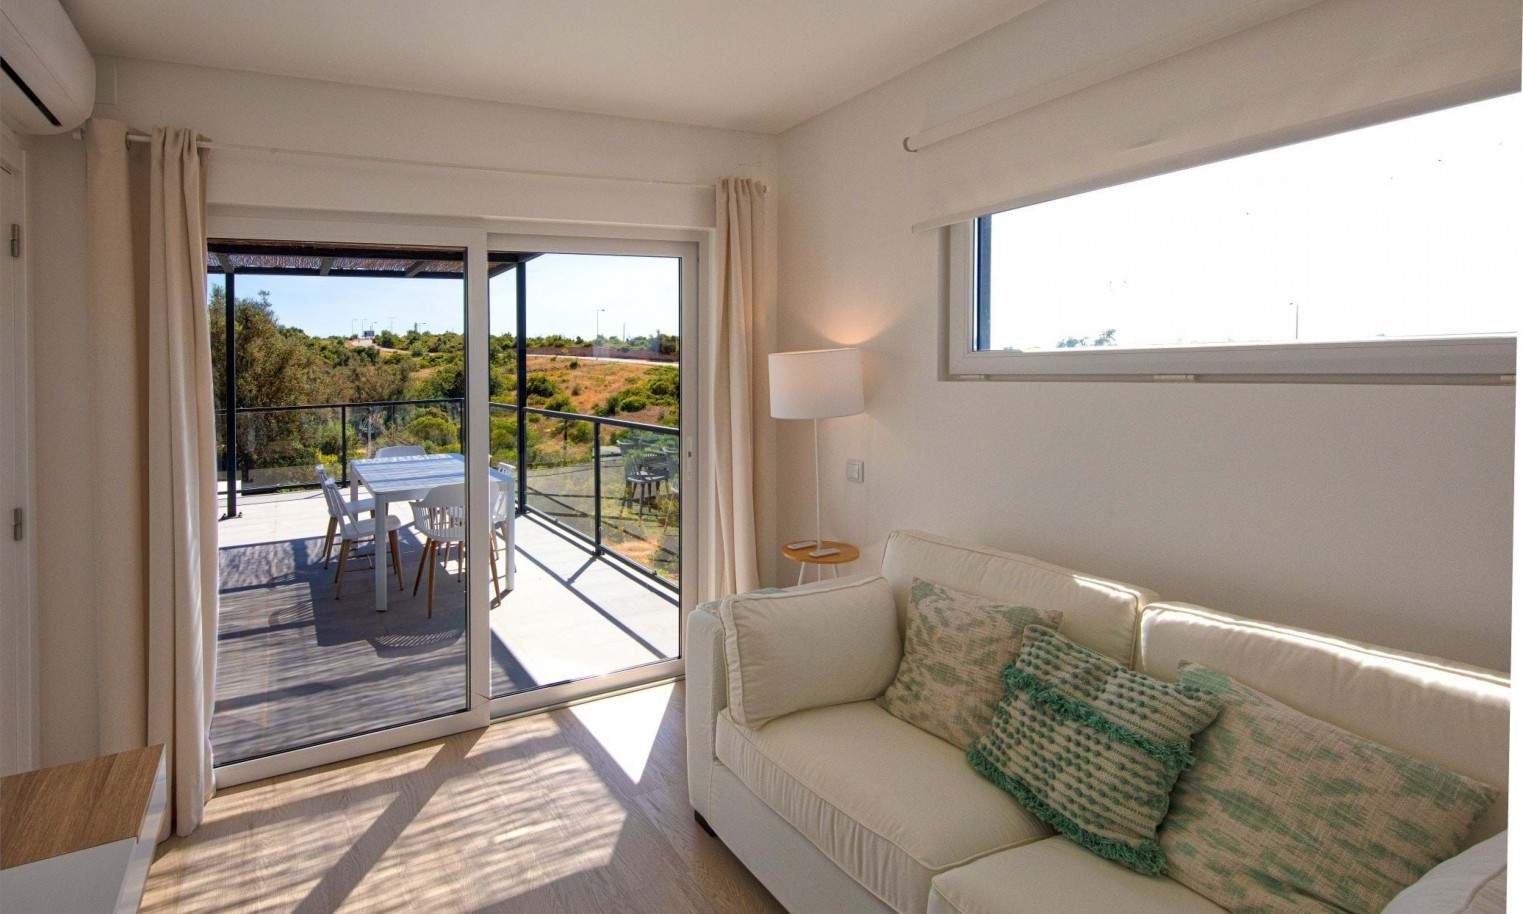 Moradia T2+1 em resort, para venda em Carvoeiro, Algarve_204821